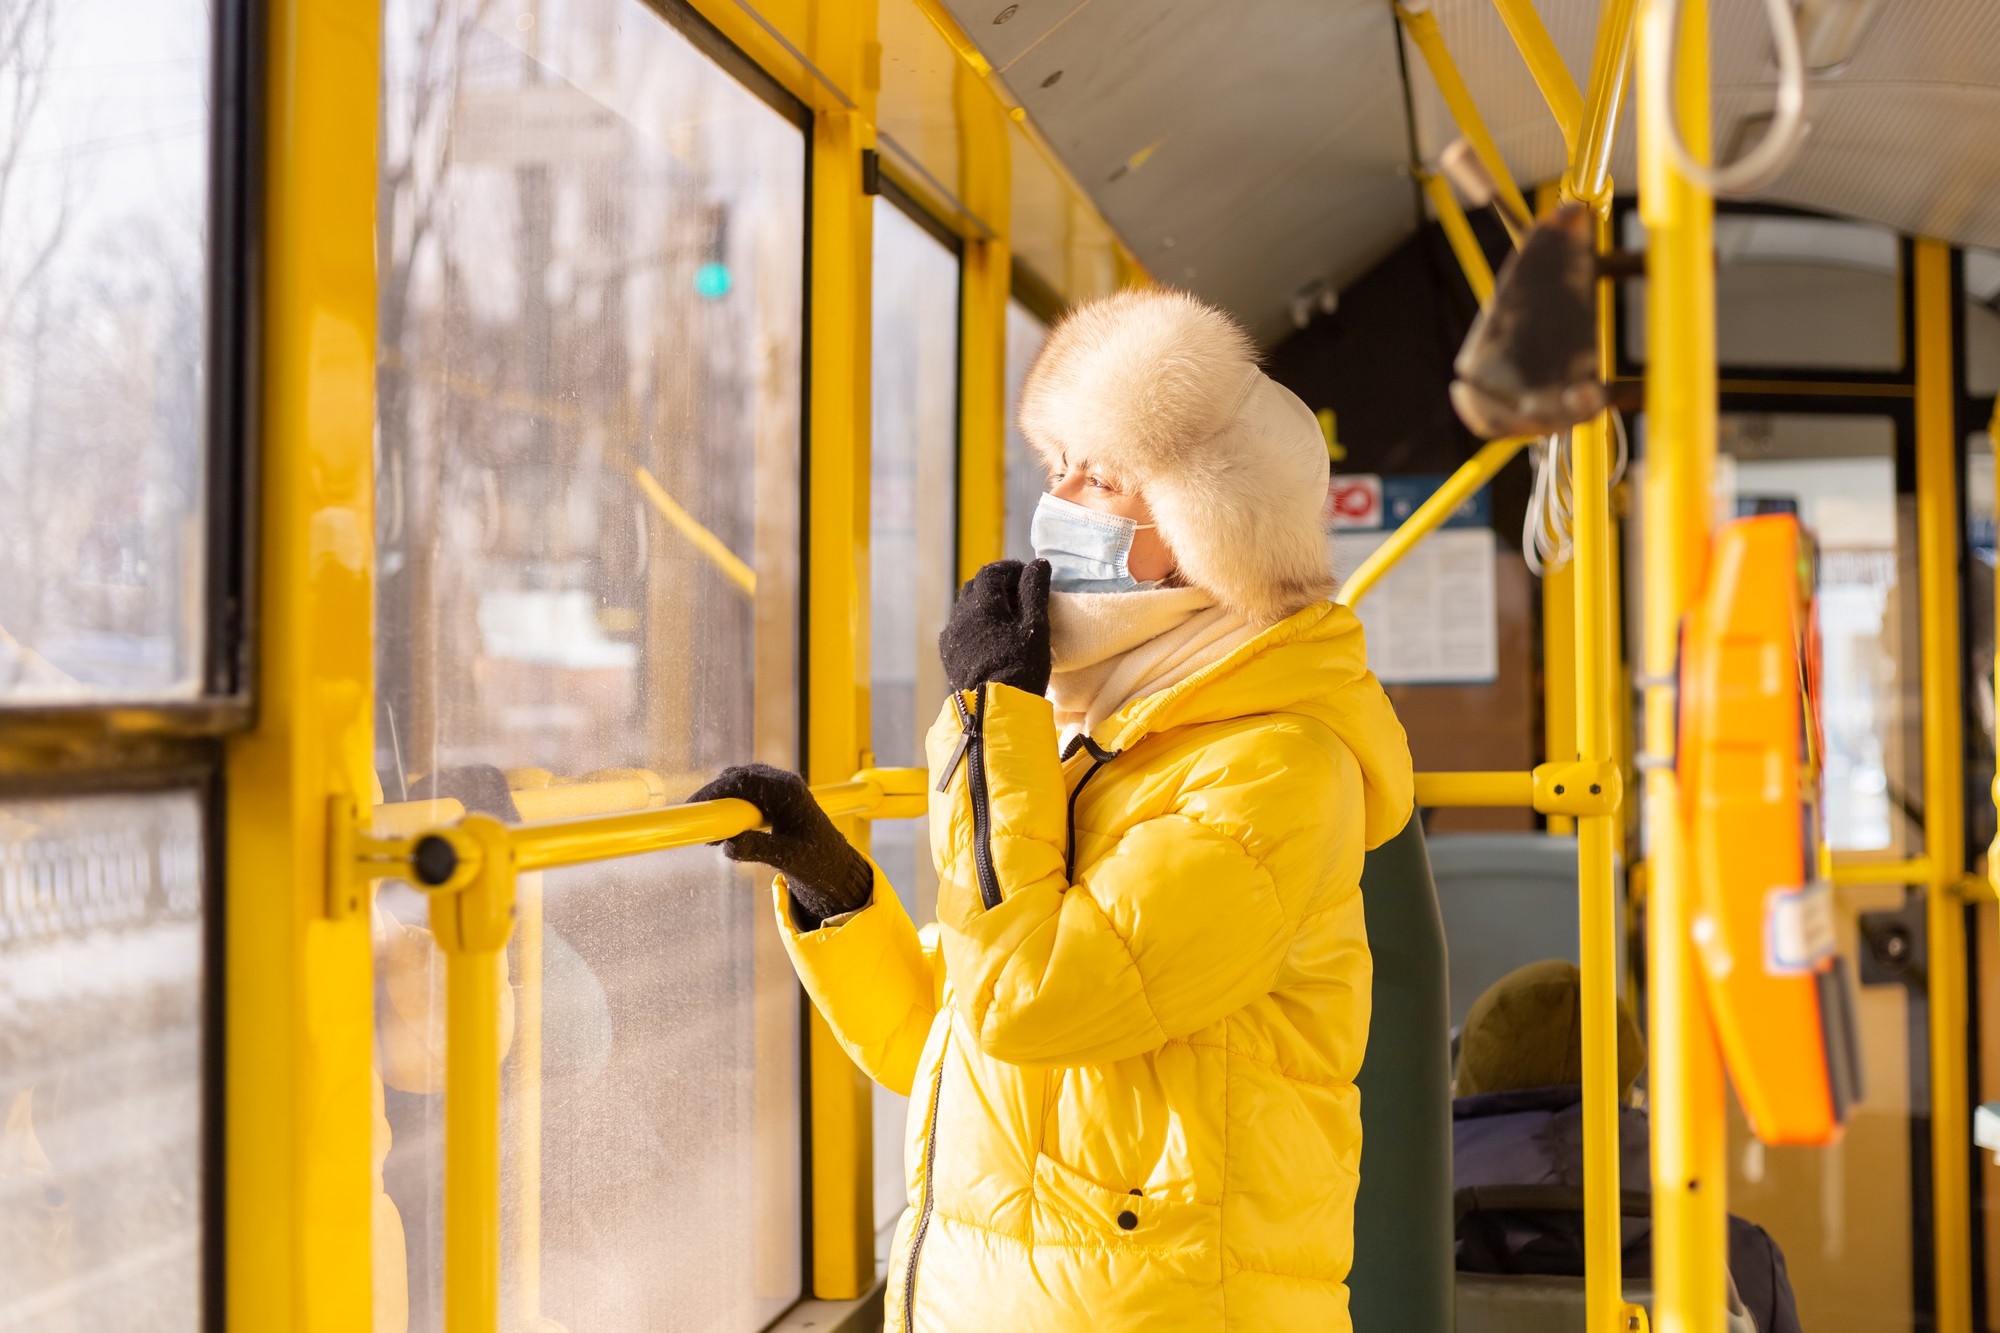 冬の日の市バスで暖かい服を着た若い女性の明るく日当たりの良い肖像画